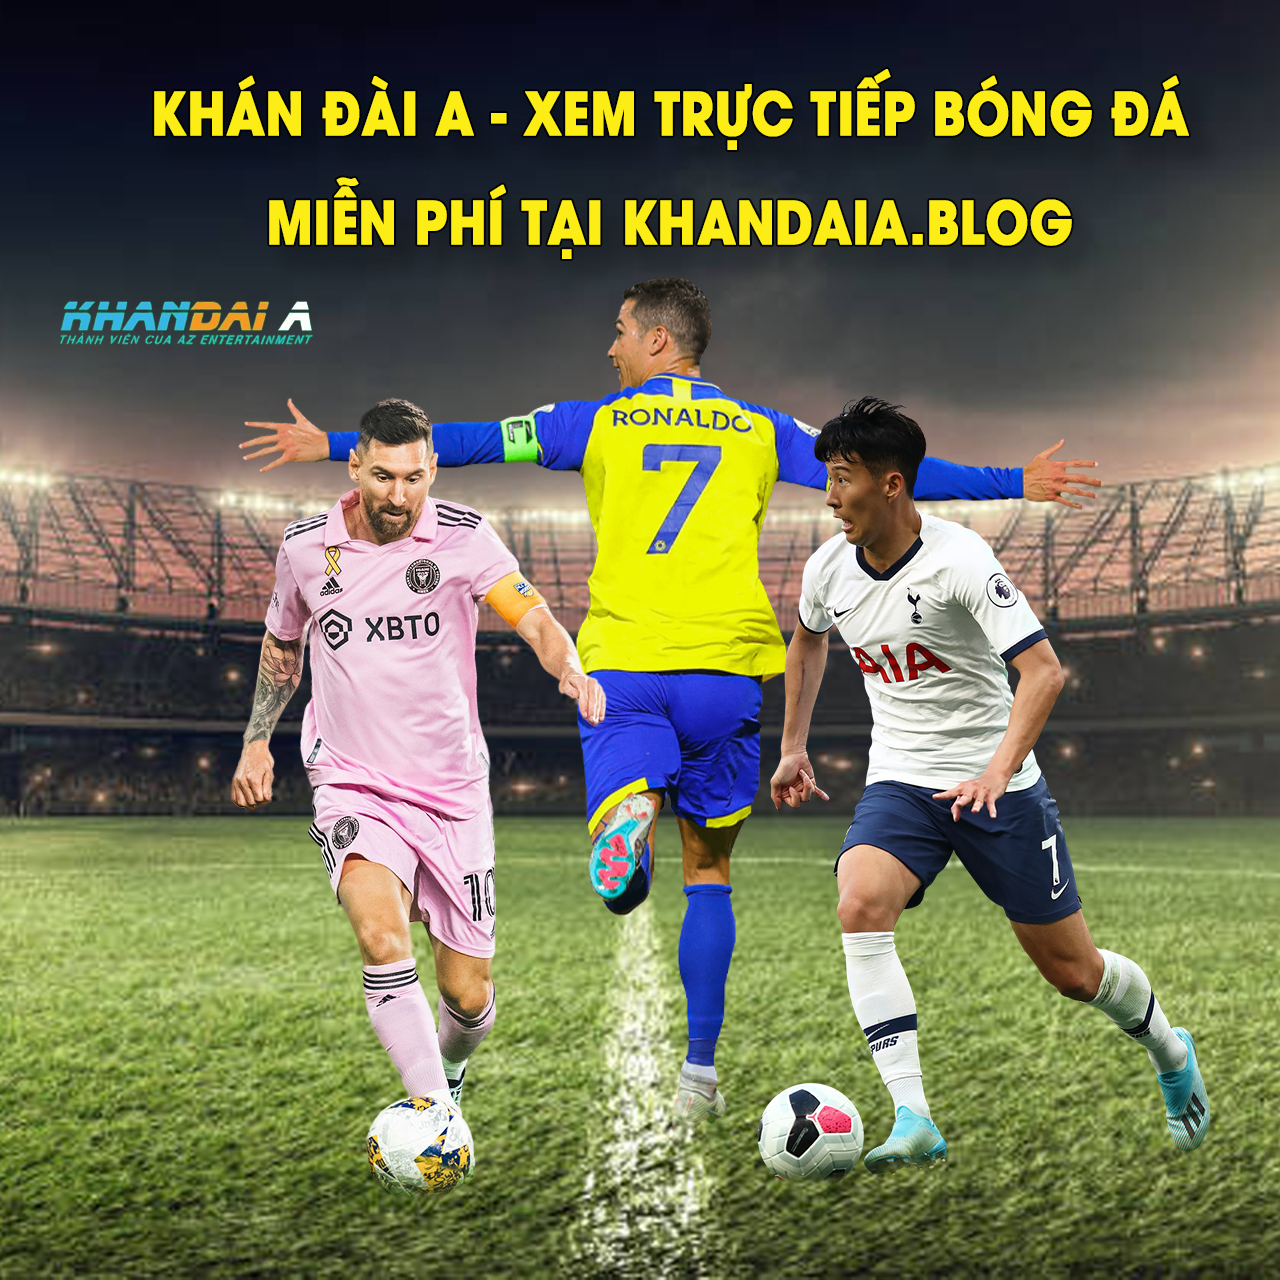 Khandaia - Trang xem trực tiếp bóng đá hàng đầu hiện nay